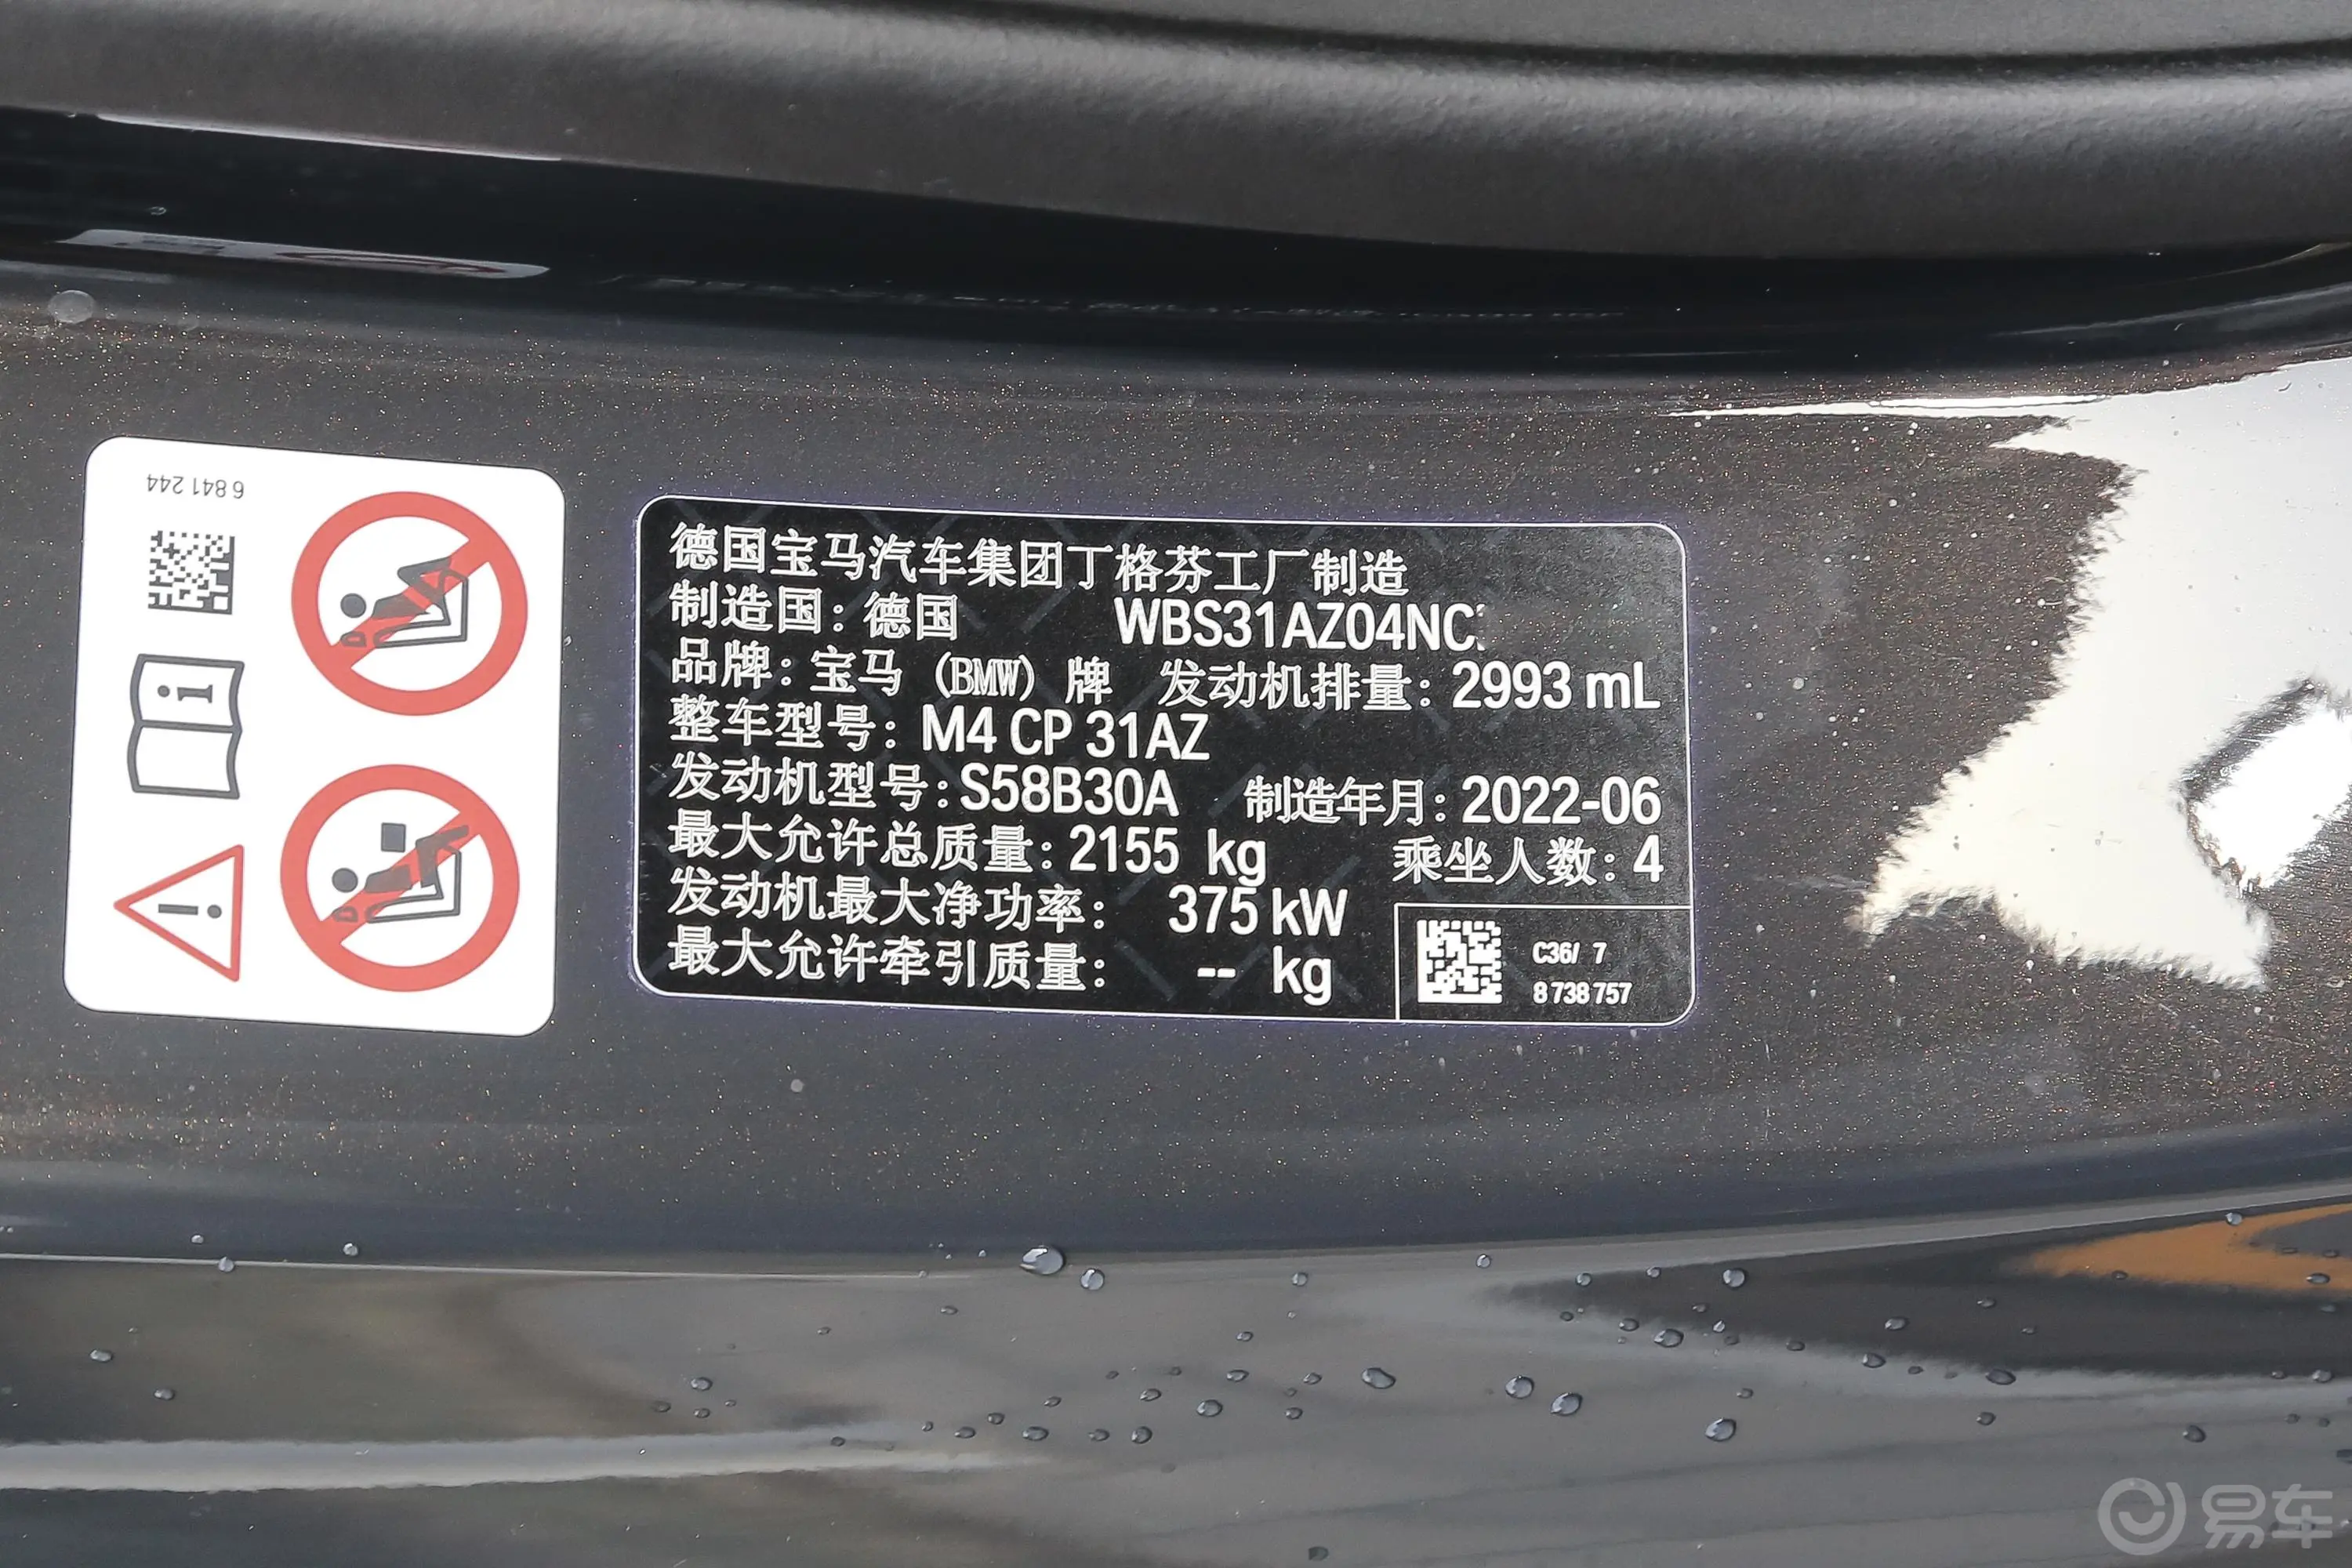 宝马M450周年版 M4 双门轿跑车 雷霆版车辆信息铭牌